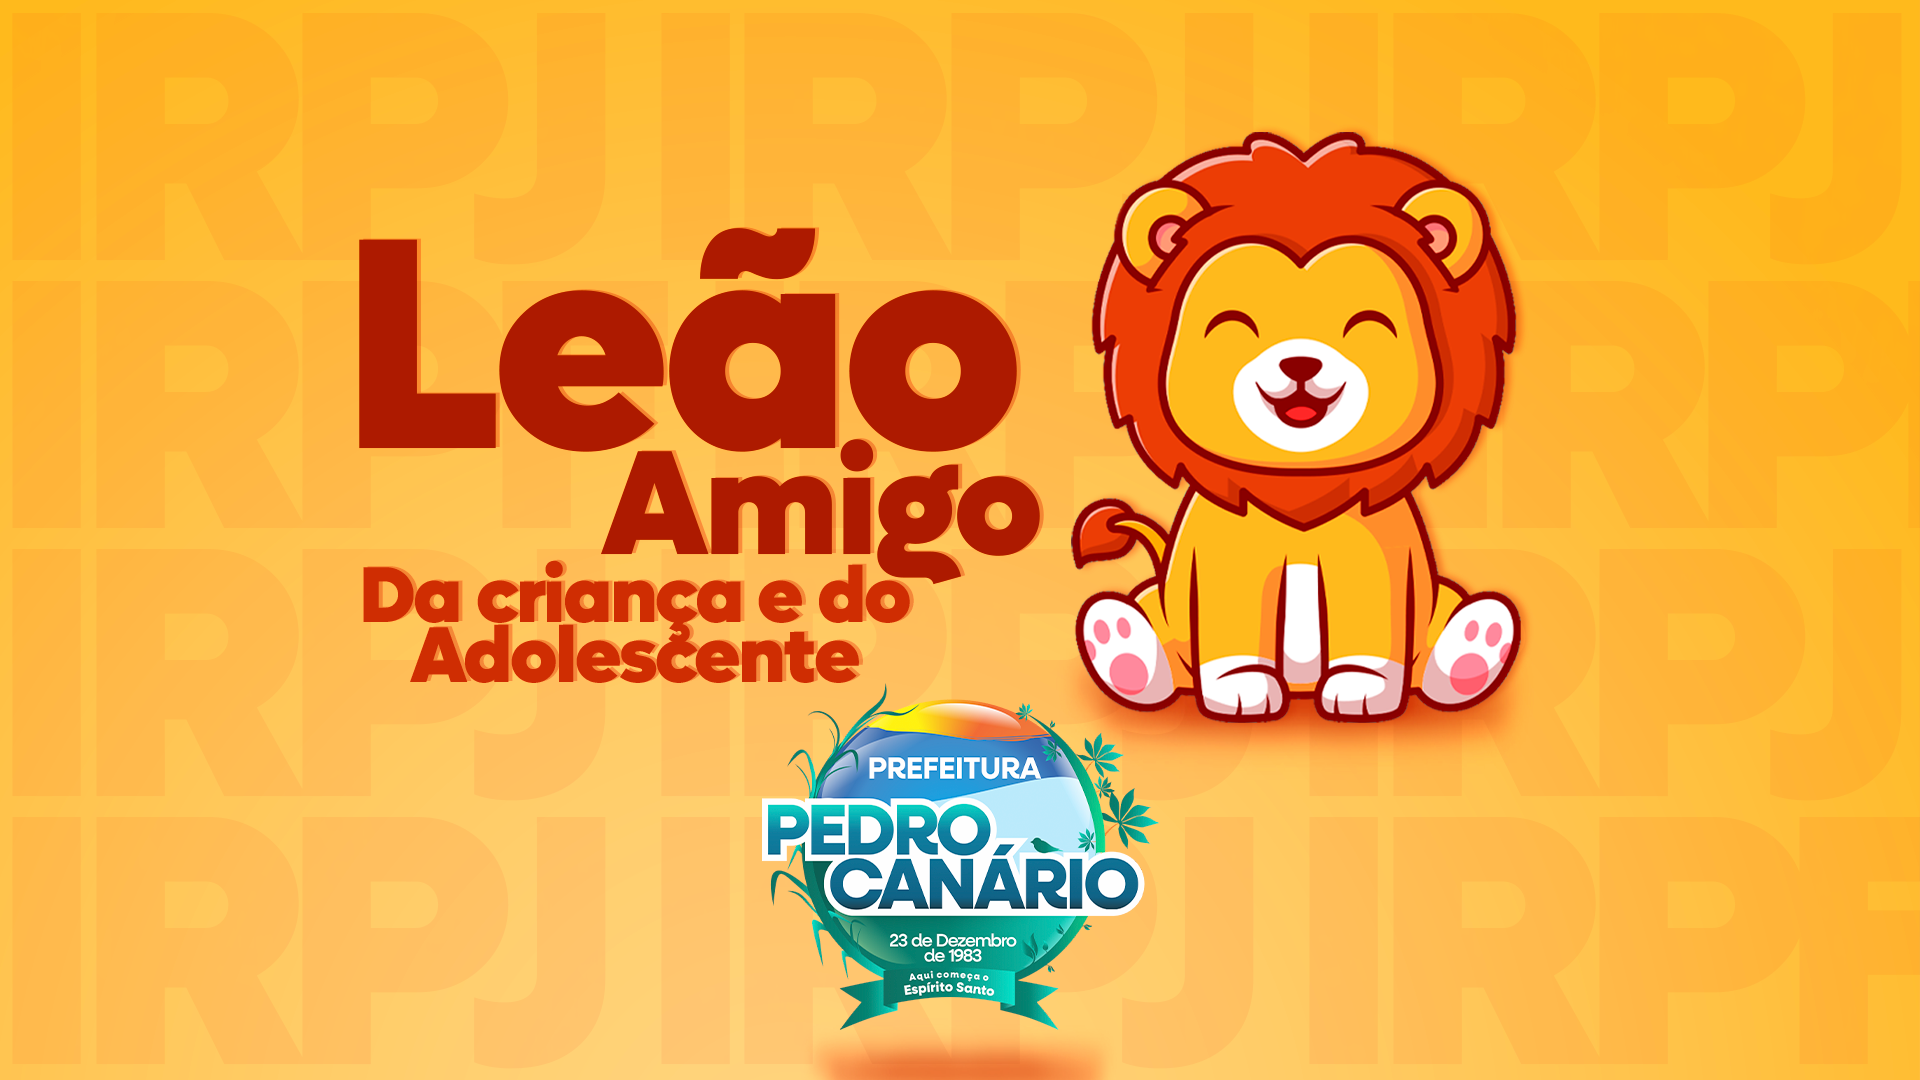 Prefeitura de Pedro Canário lança campanha “Leão Amigo” para incentivar destinação do Imposto de Renda aos fundos públicos